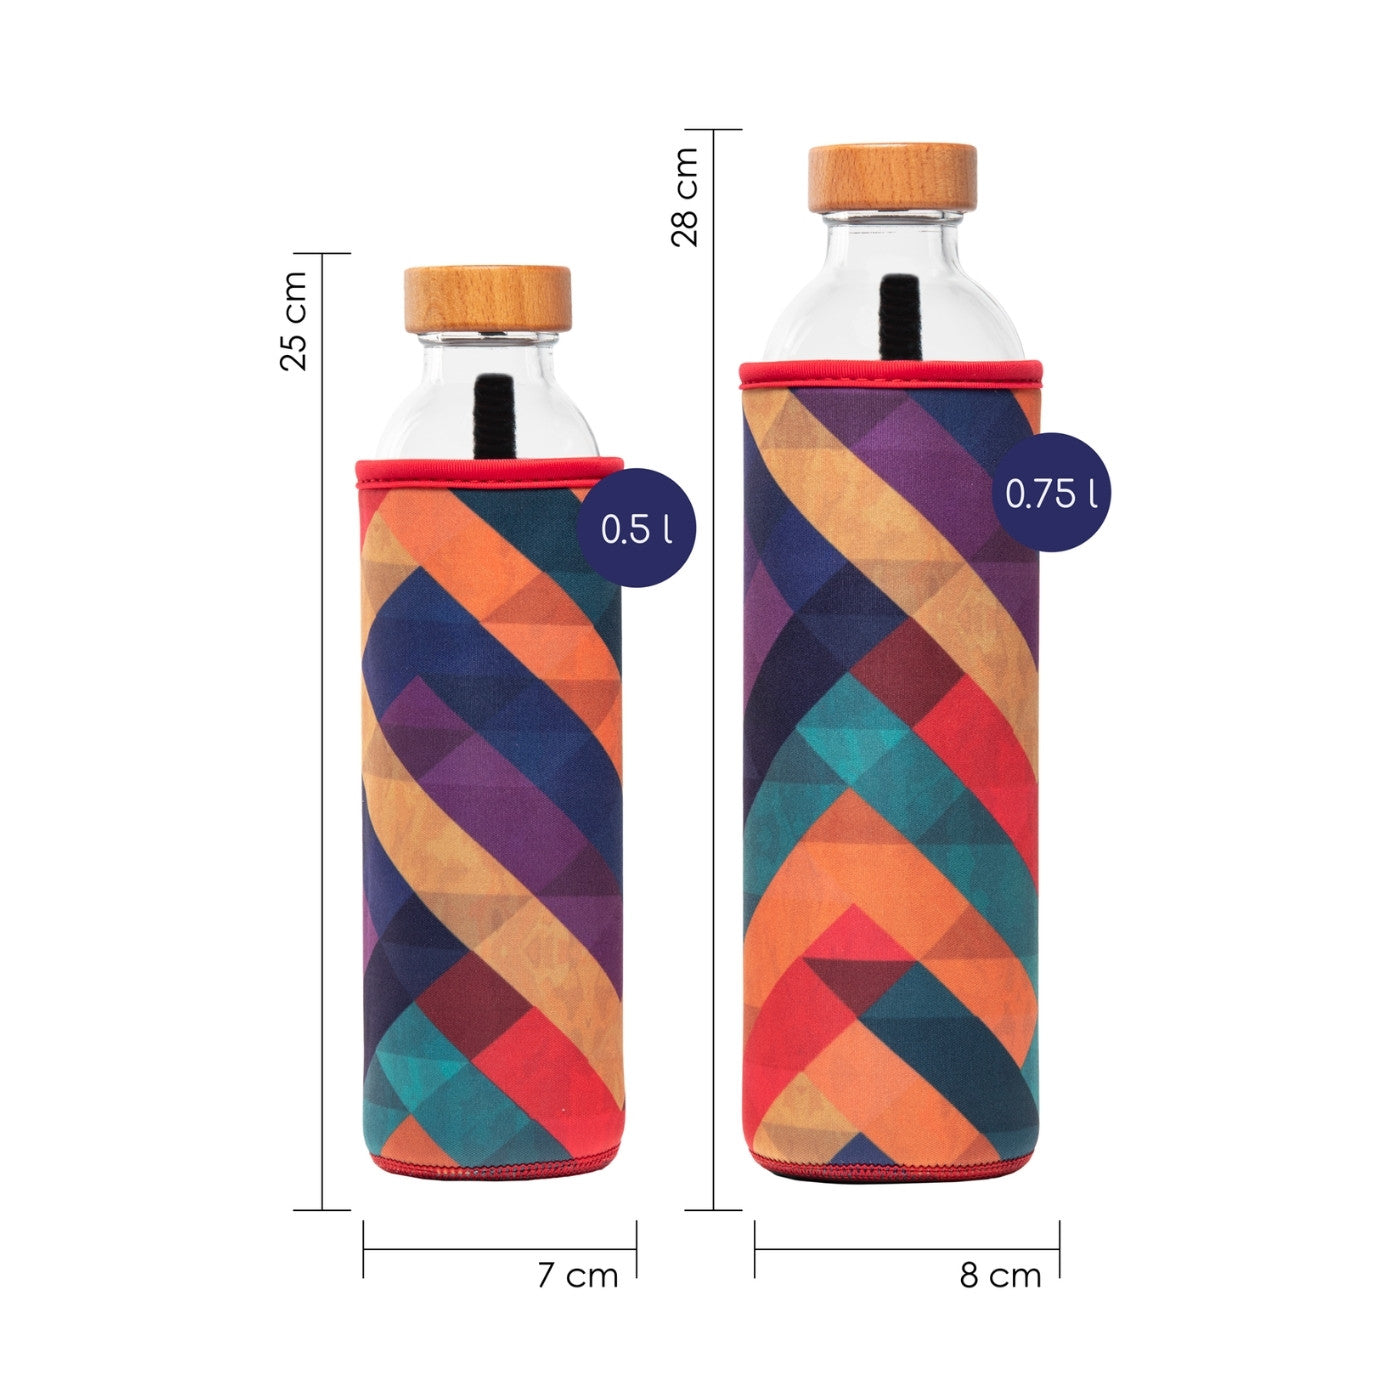 dimensionen der wiederverwendbaren flaska glasflasche mit neopren schutzhülle und geometrische formen design in verschiedenen farben